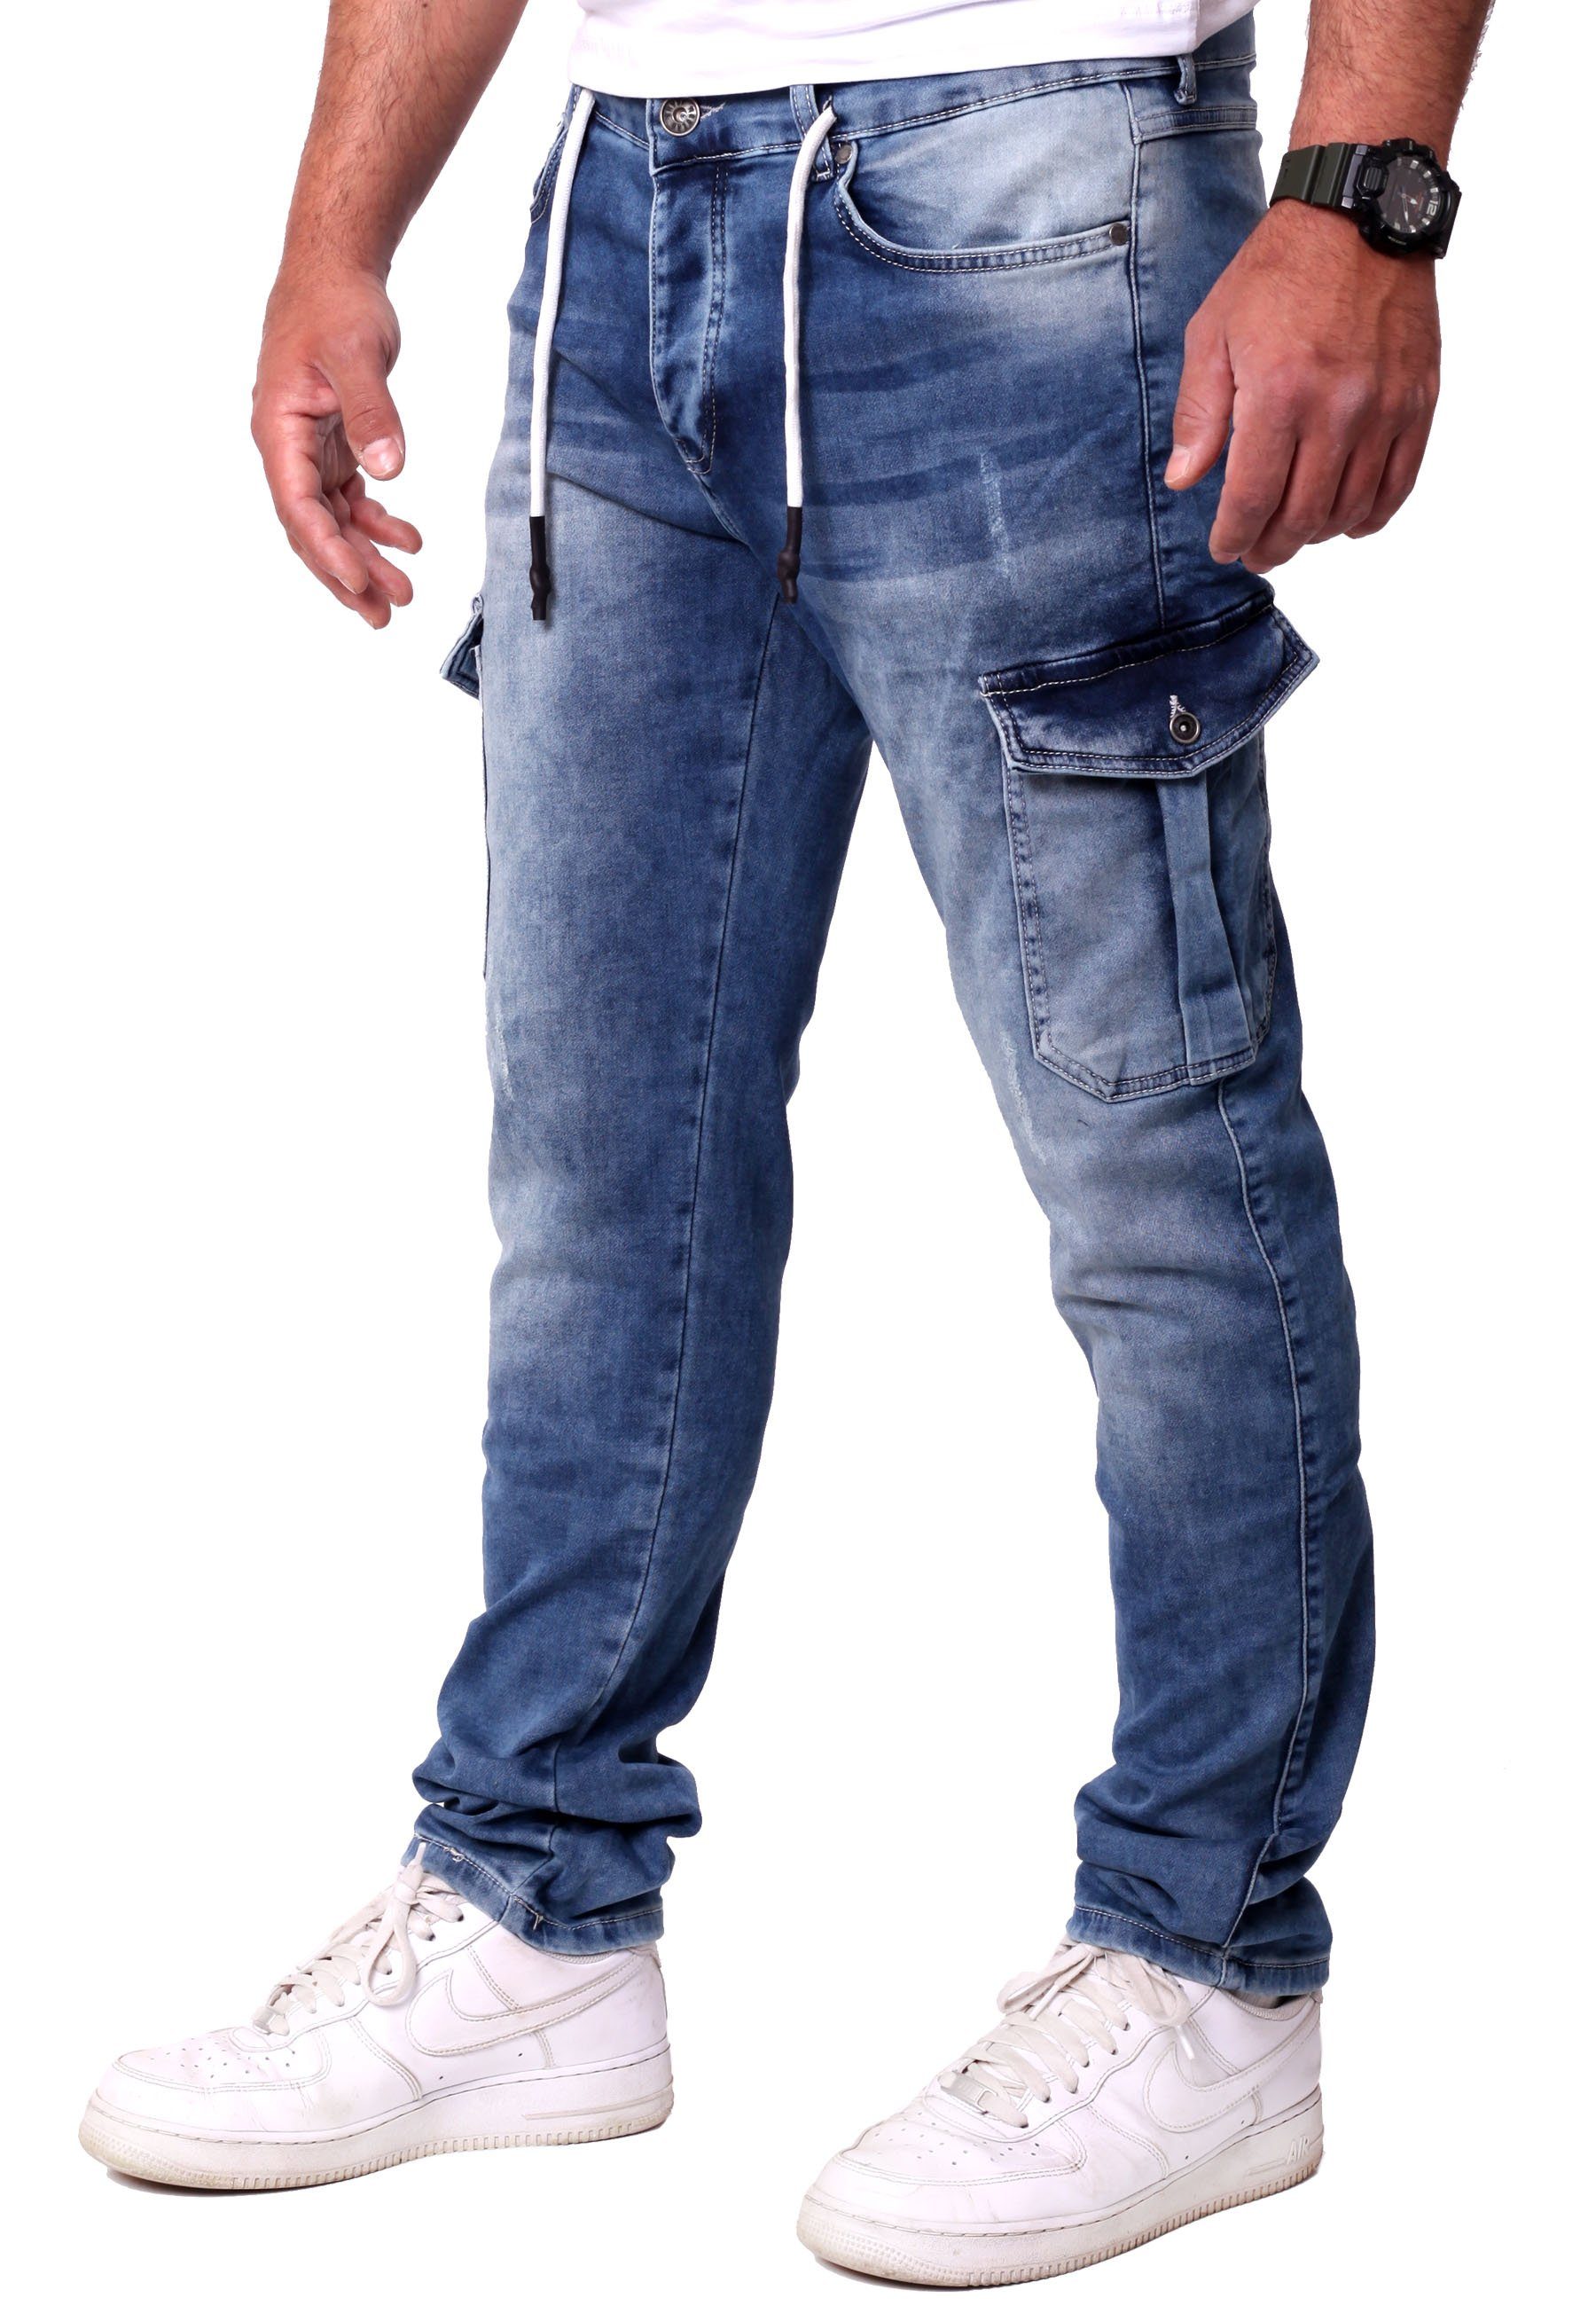 Reslad Stretch-Jeans Reslad Cargohose Jeans Cargo-Hose Sweatjeans Sweathose in Slim Fit Cargo Herren Hose Jeansoptik - Stretch